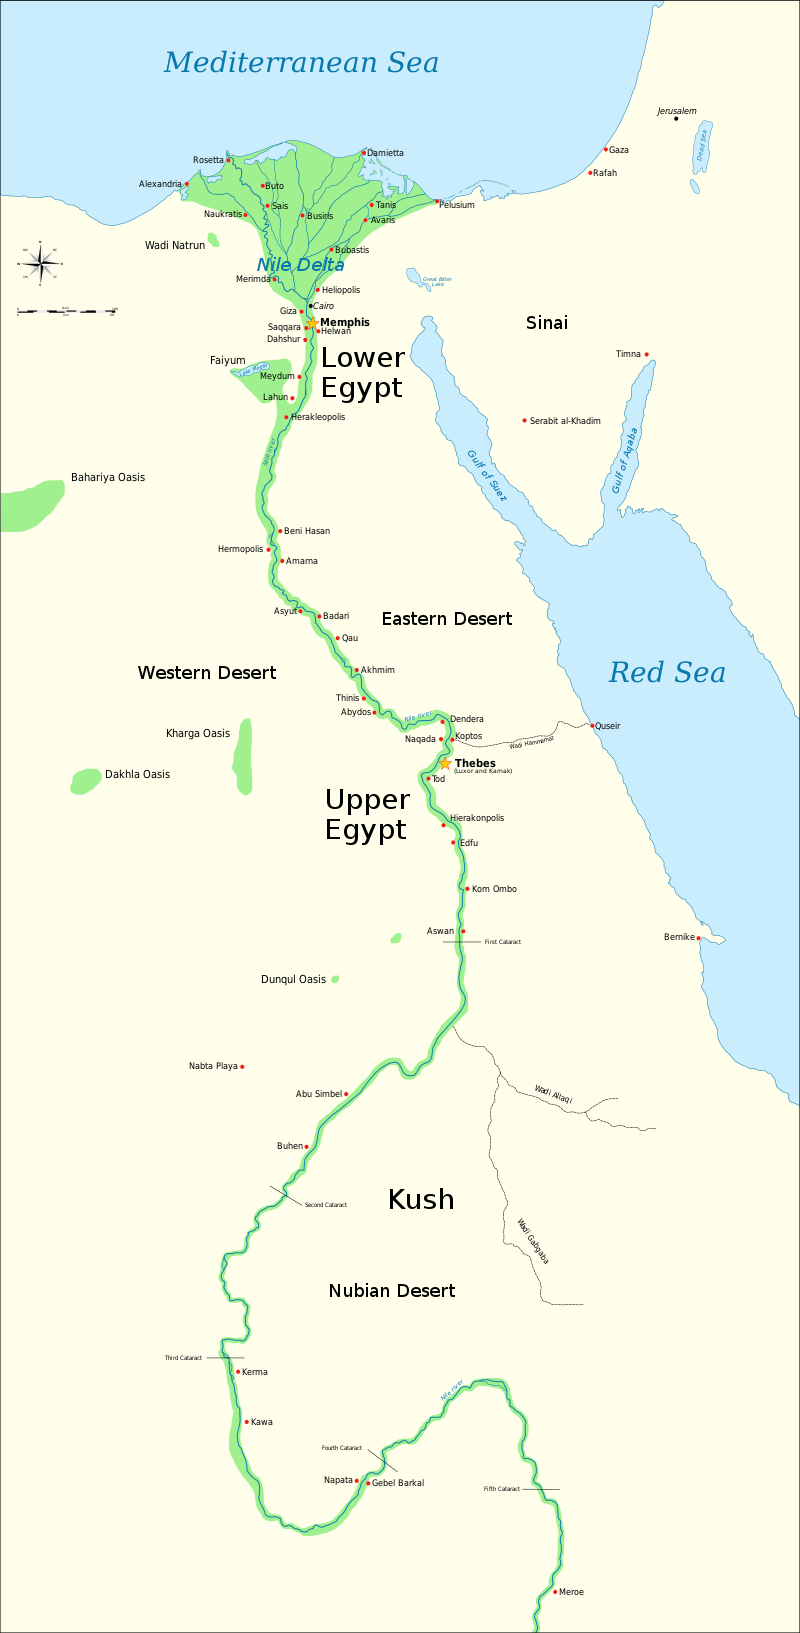 Peta Kush sareng Mesir Kuno, nunjukkeun Nil dugi ka katarak kalima, sareng kota-kota sareng tempat-tempat utama jaman Dinasti Mesir kuno (3150 SM dugi ka 30 SM) (peta: Jeff Dahl, CC Y-SA 4.0)